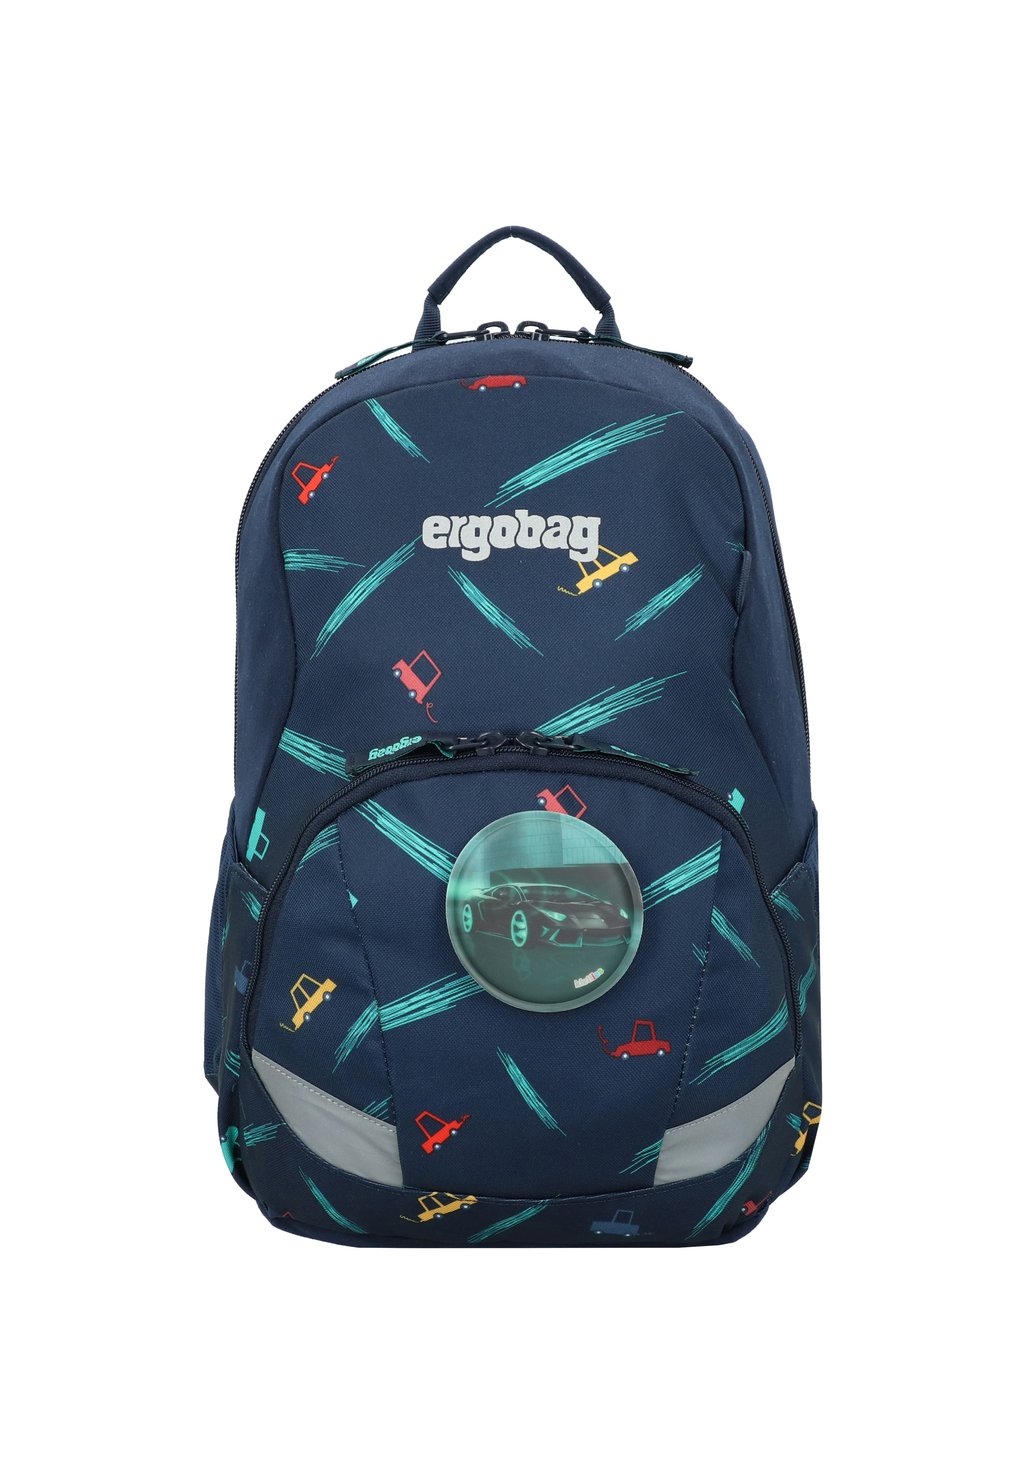 Школьный рюкзак EASE Ergobag, цвет autos